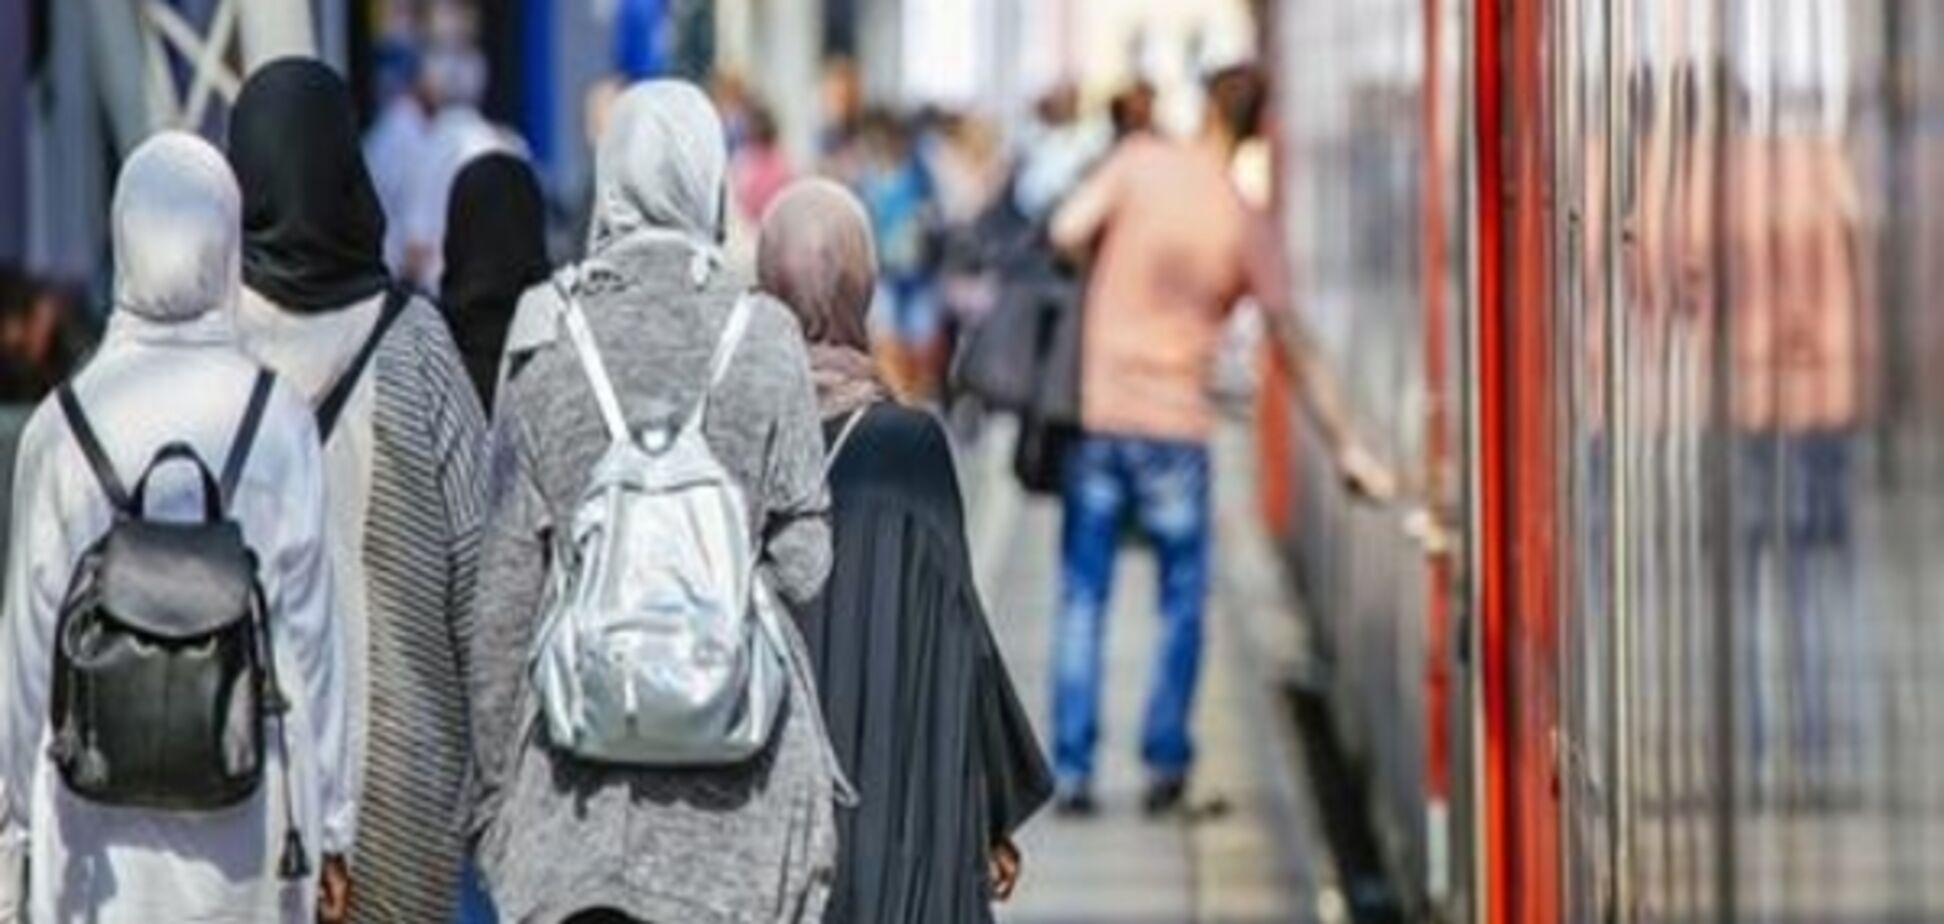 Німецькі мусульмани допомагають біженцям значно більше за інших - опитування